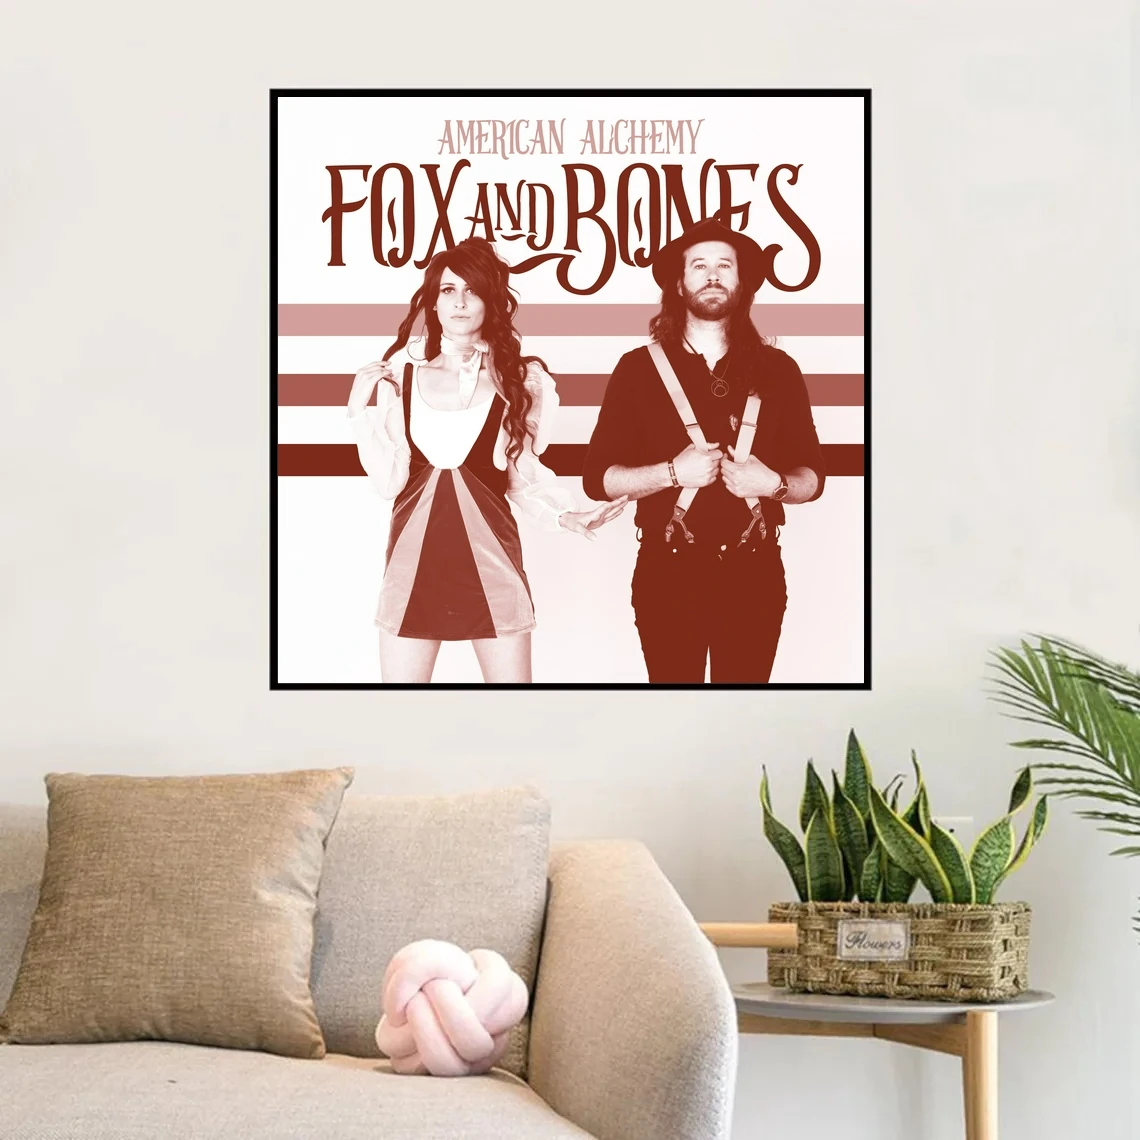 

Fox And Bones 2021 Обложка музыкального альбома плакат печать Художественная Картина на холсте Стена гостиная домашний Декор (без рамки)